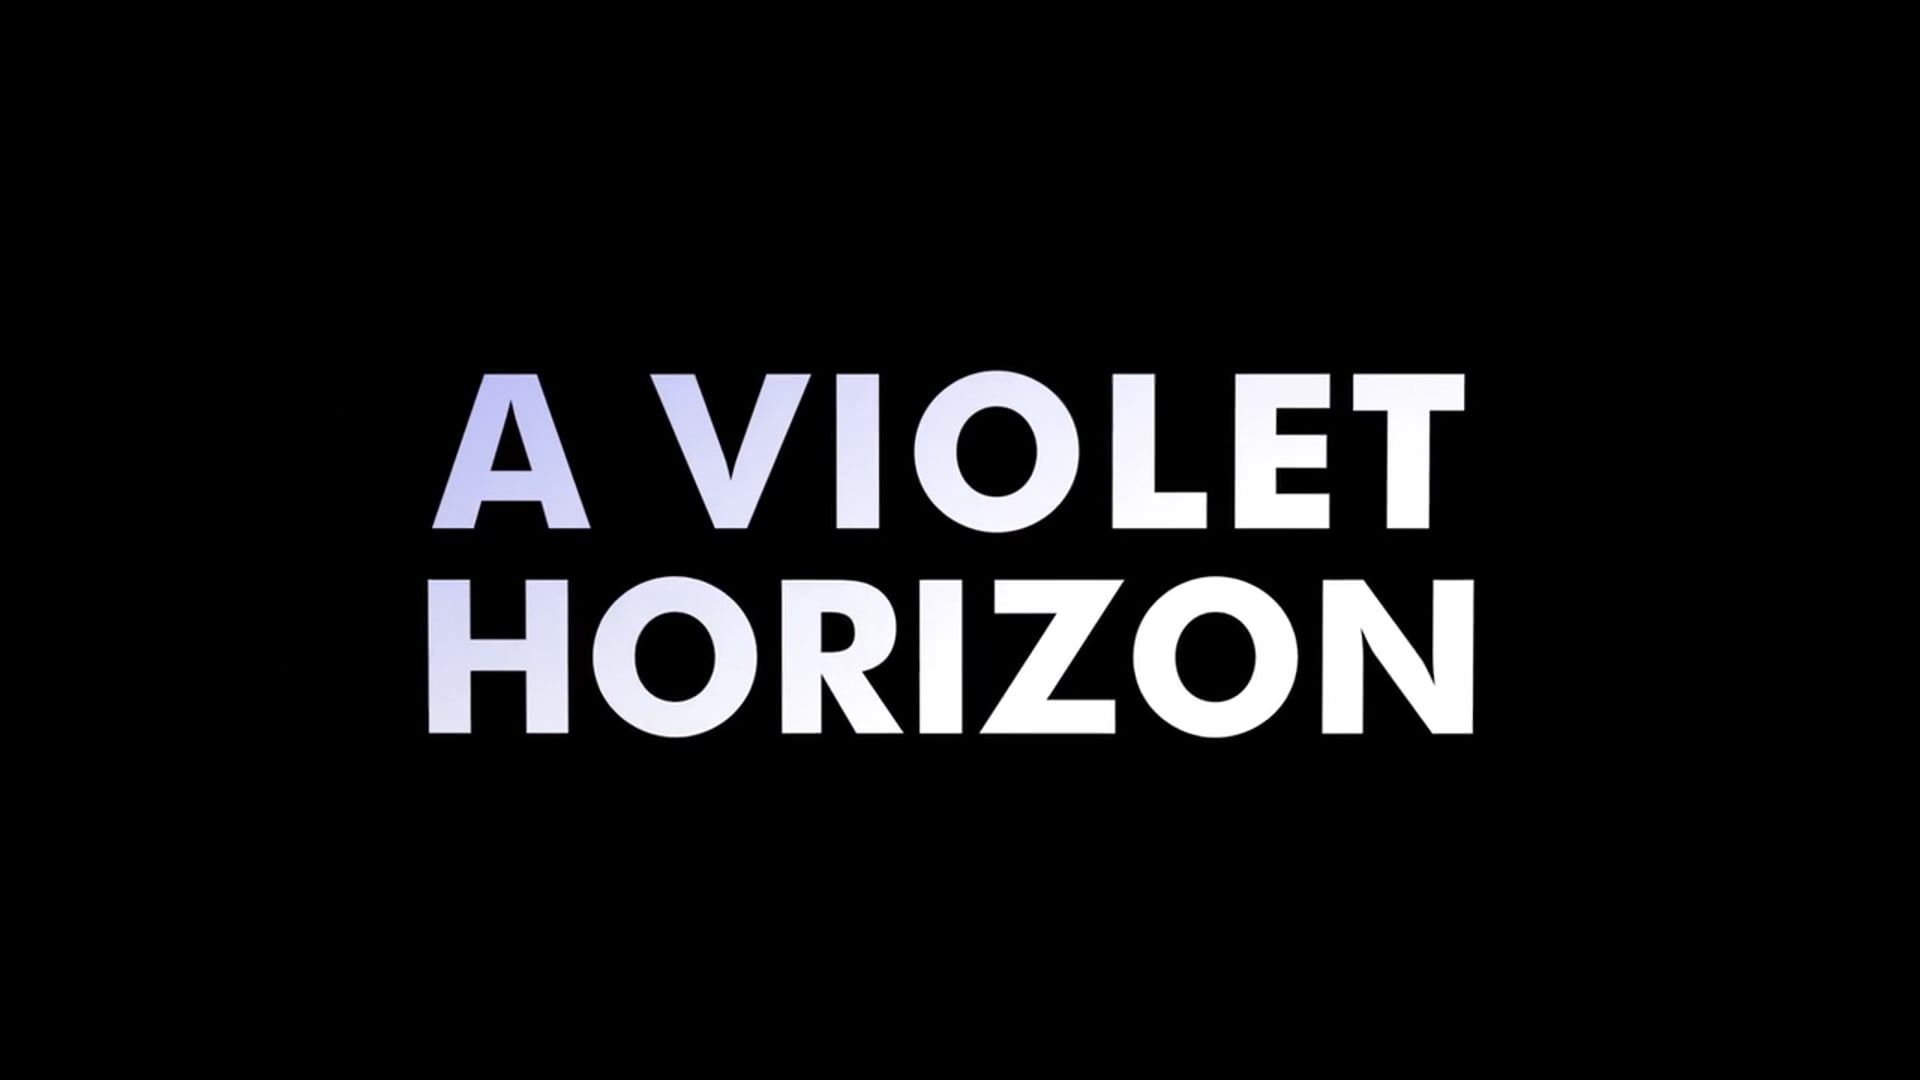 WiA Austin Shortfilm: A Violet Horizon